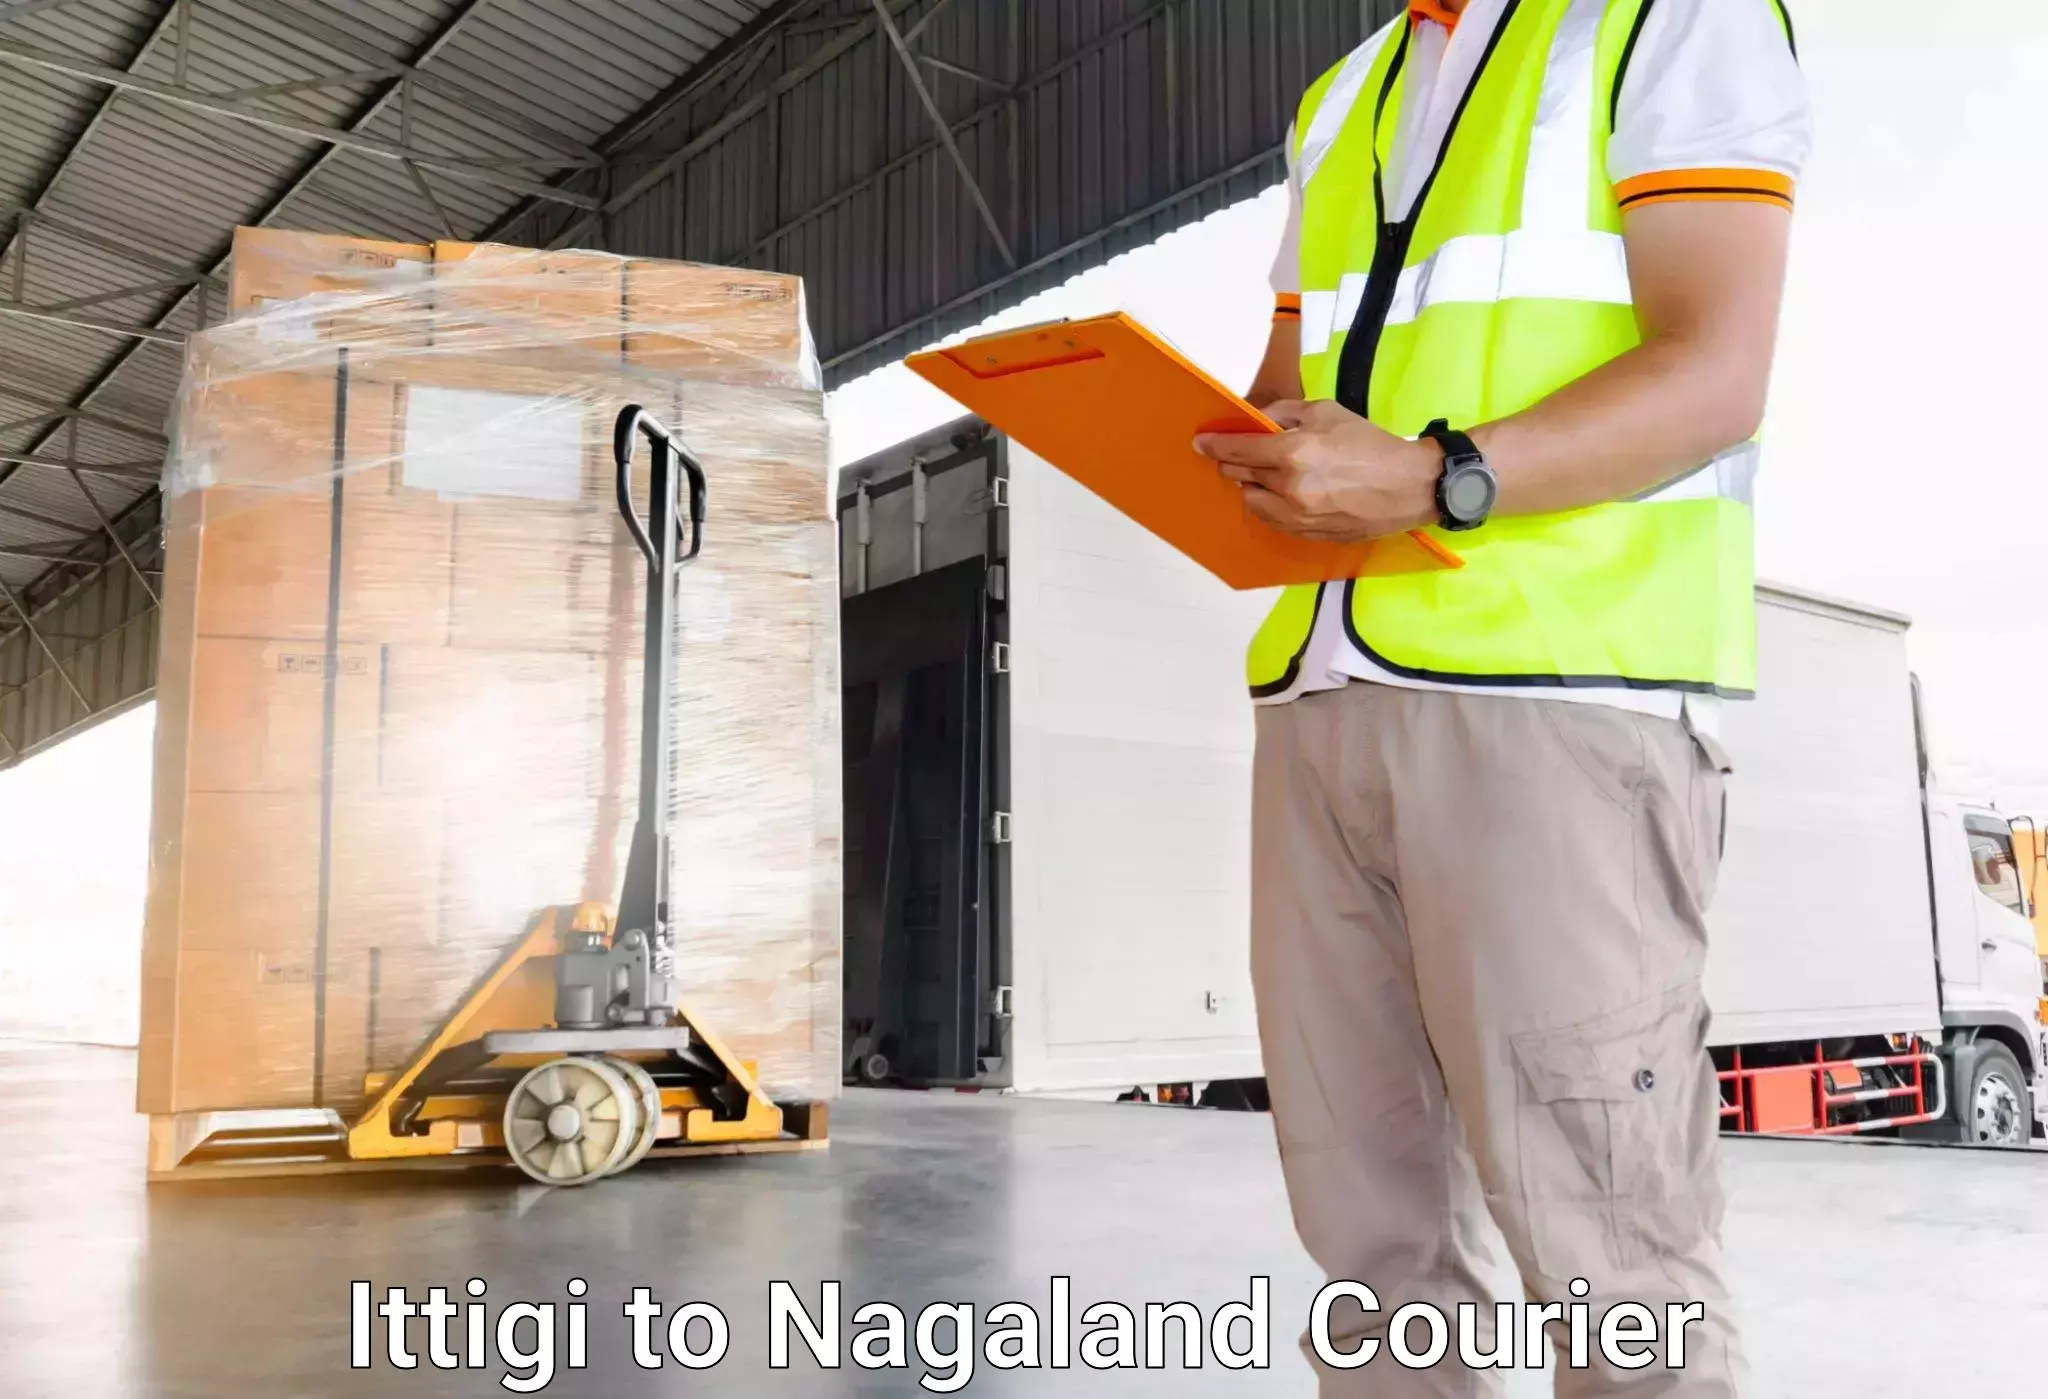 Luggage transport consulting Ittigi to Nagaland